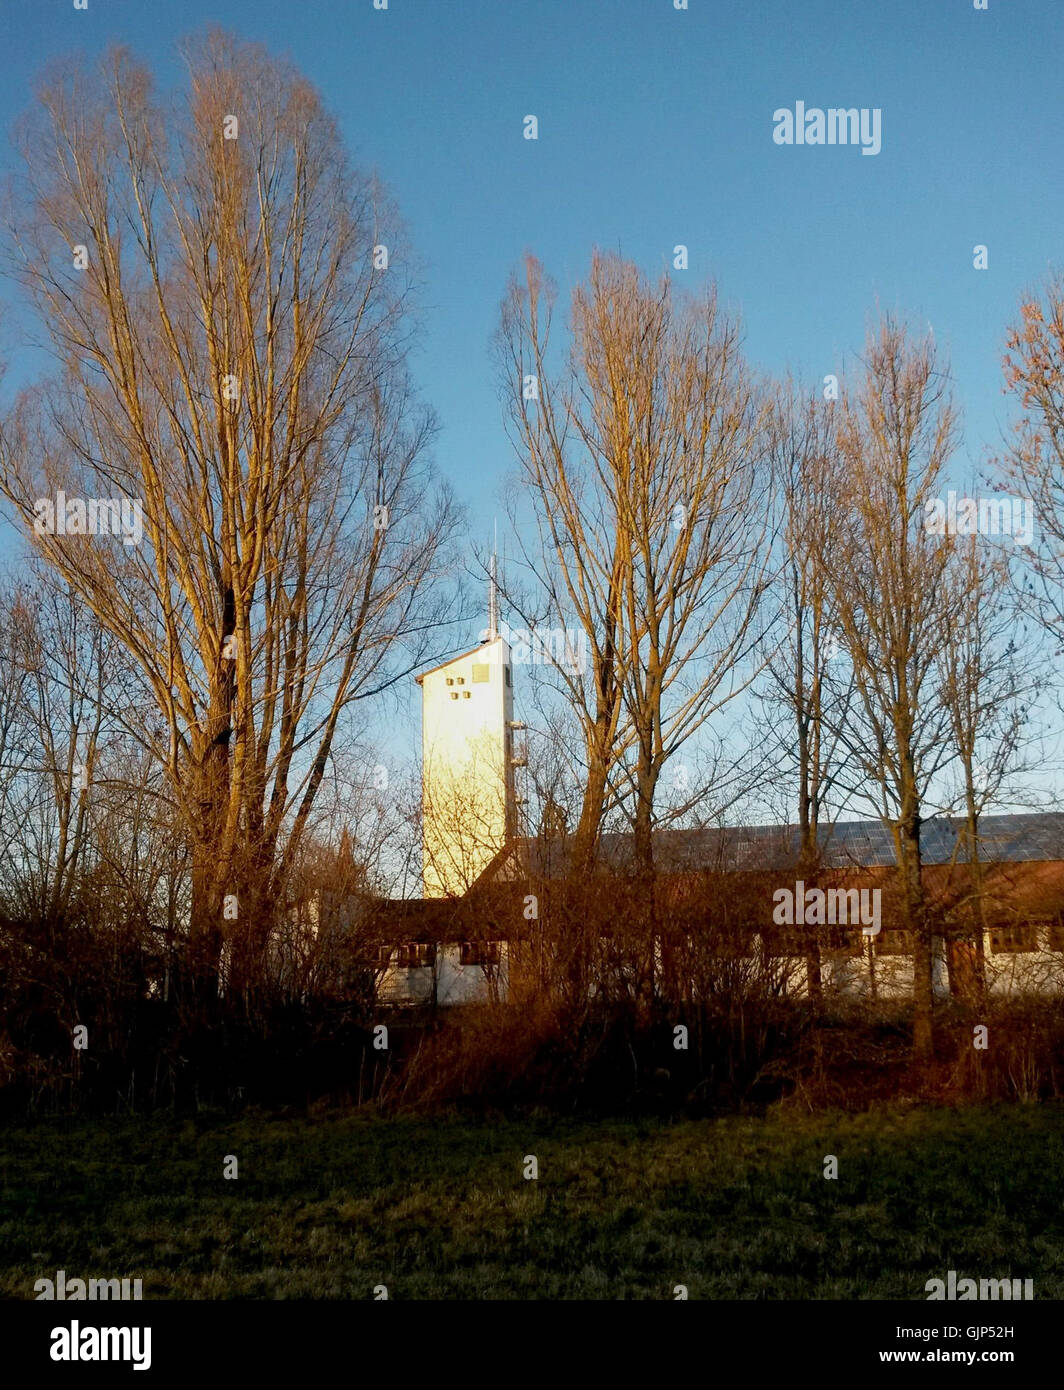 1 09 05 Turm beim Feuerwehrhaus mit für Dohlen im Herbst 2013 angebrachten Nistkästen Stock Photo